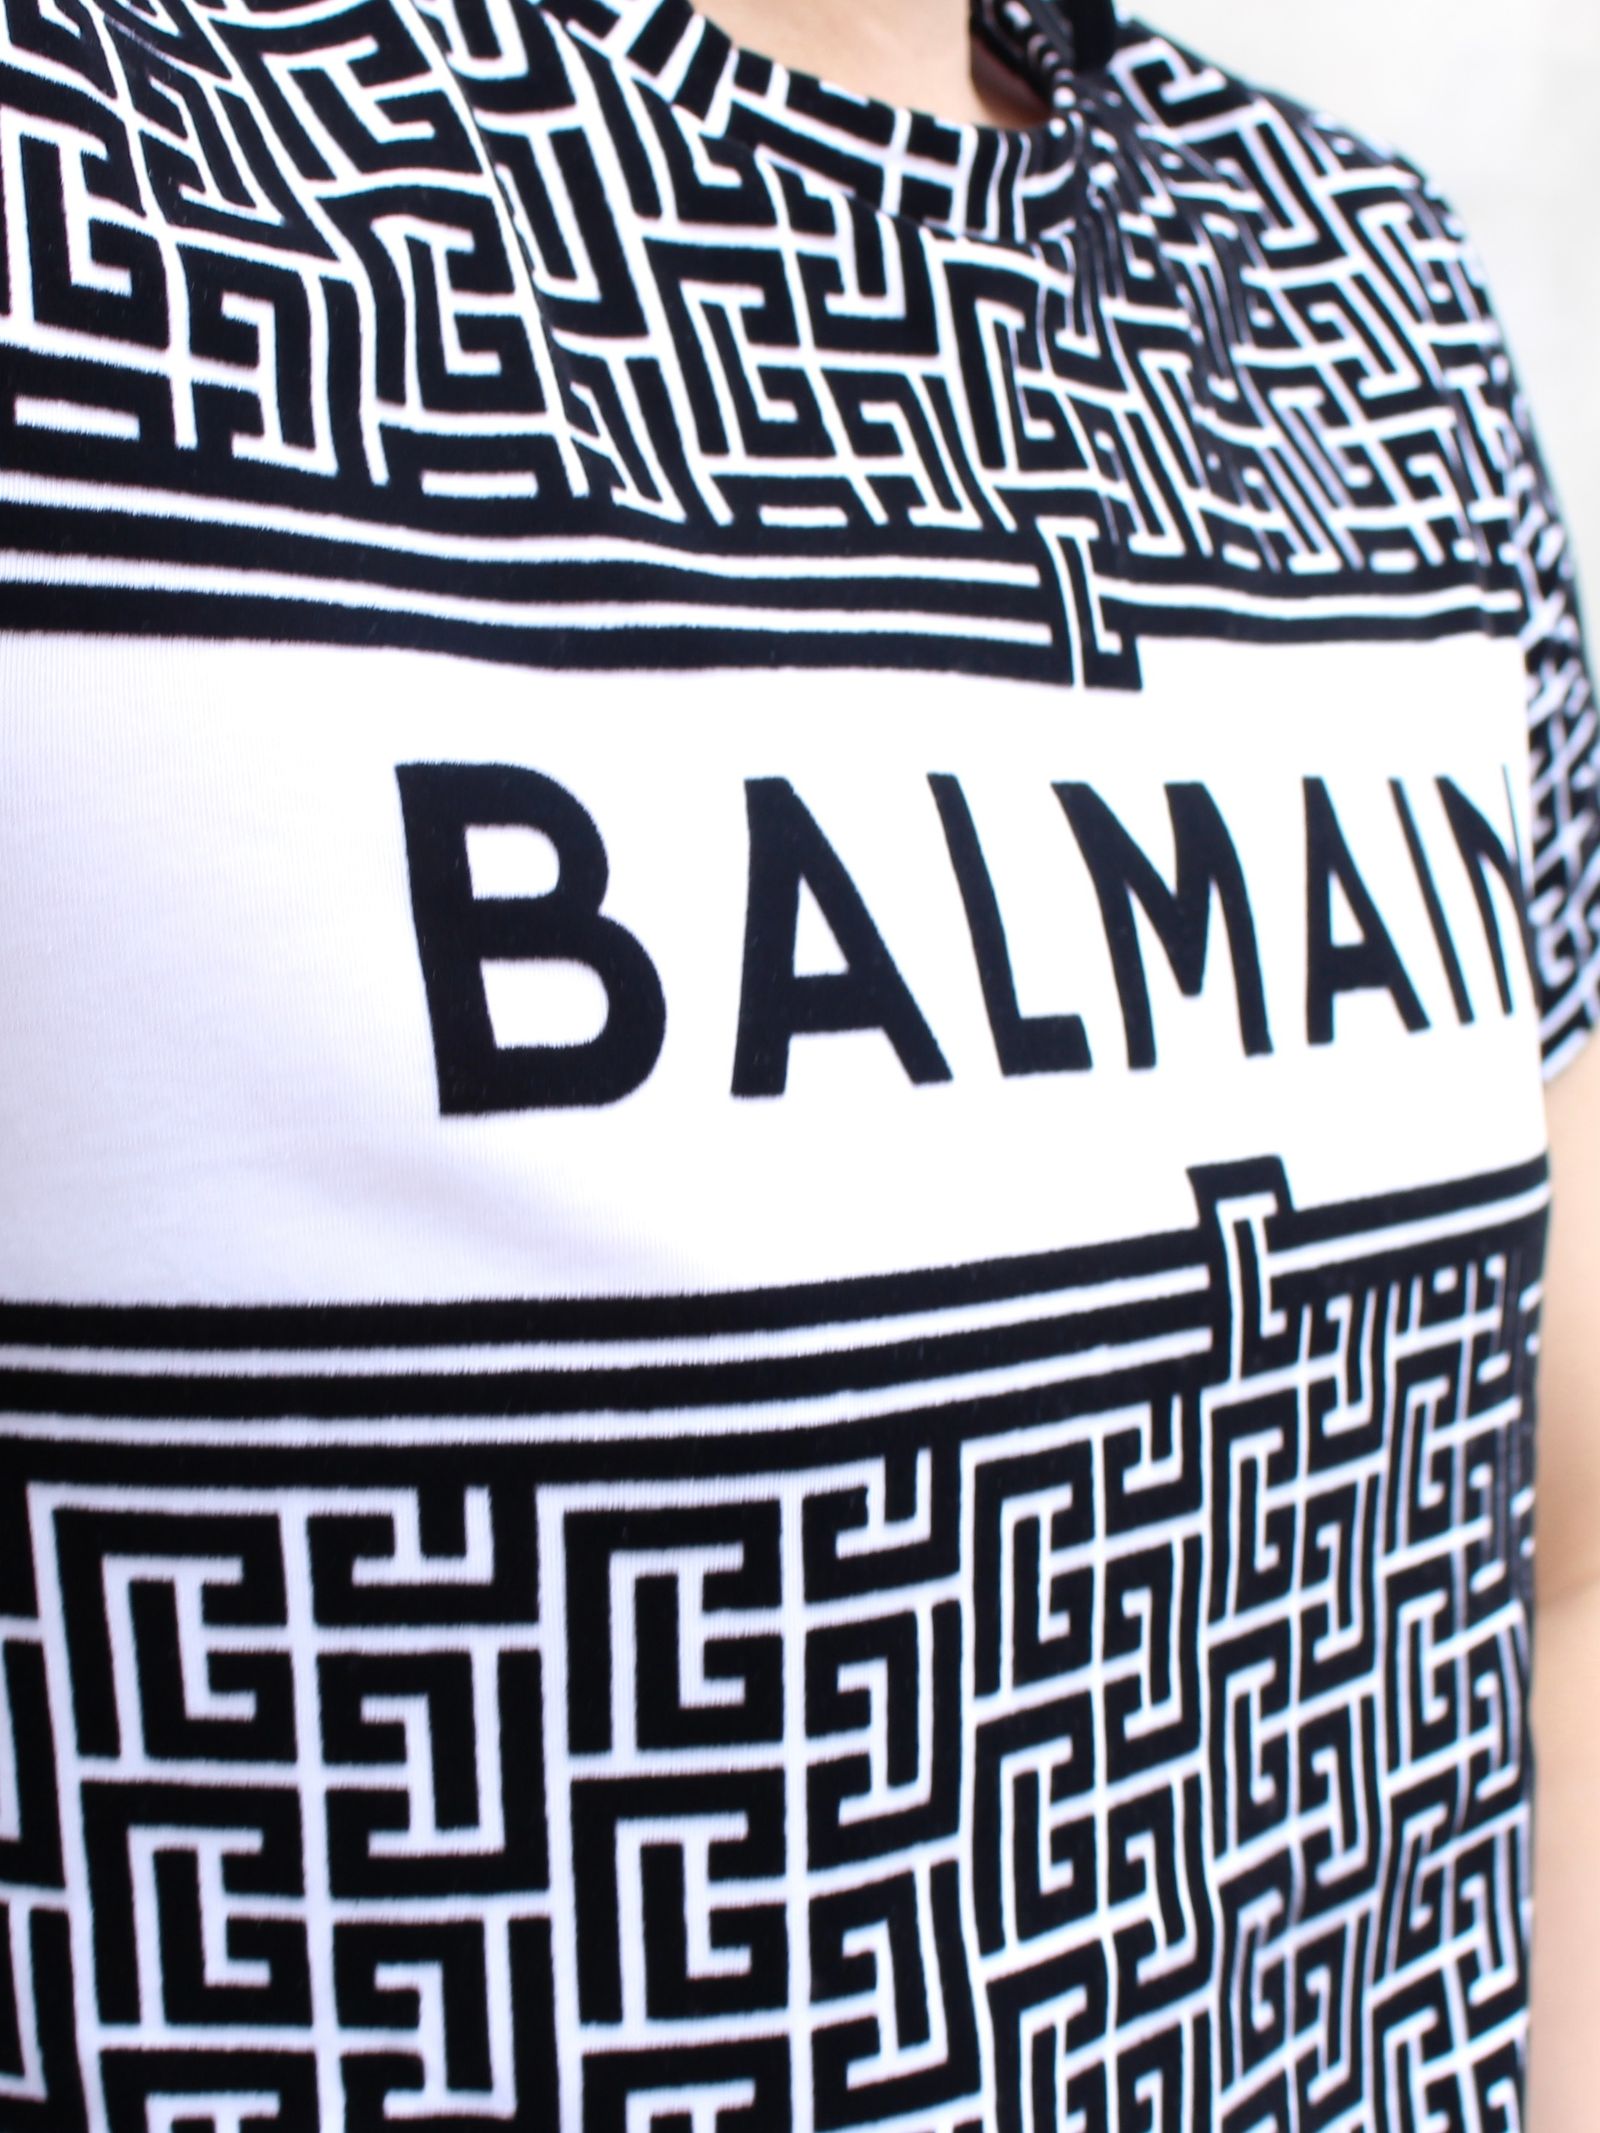 BALMAIN - モノグラムロゴ 半袖Tシャツ / OVER MONOG LOGO T-SHIRTS